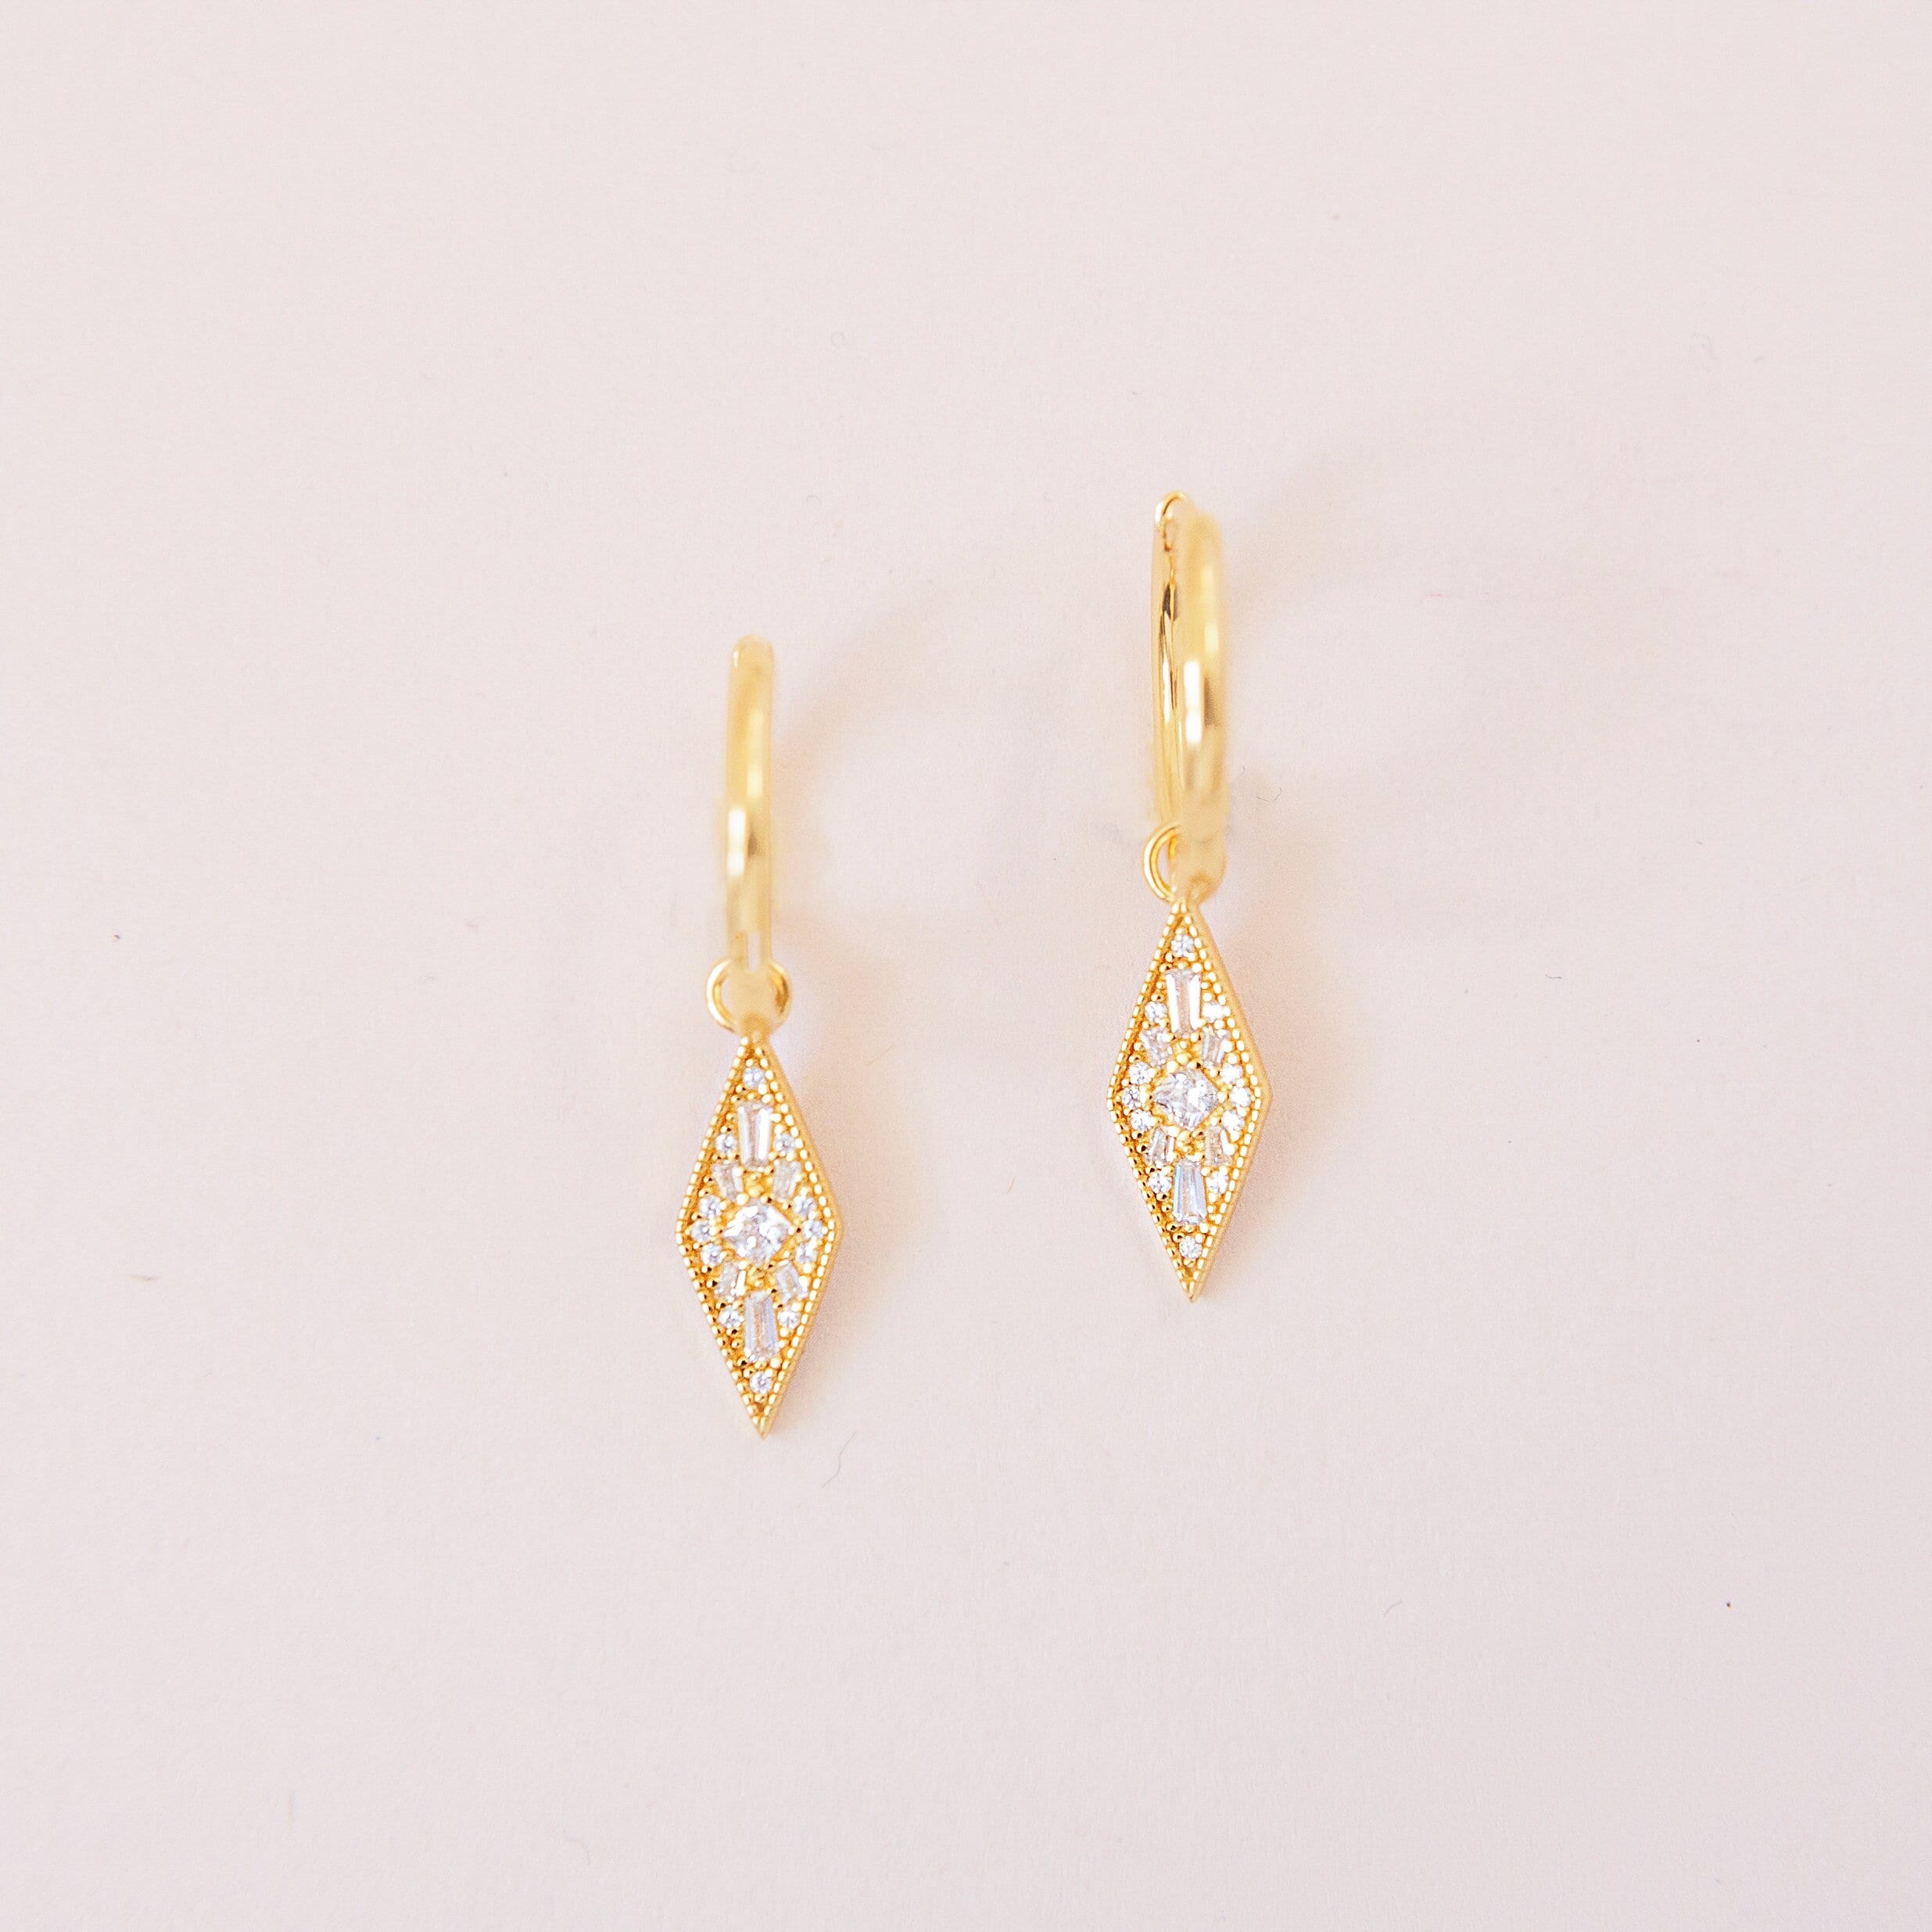 KITE EARRINGS // Dainty 14k gold plated cubic zirconia charm huggie hoop earrings